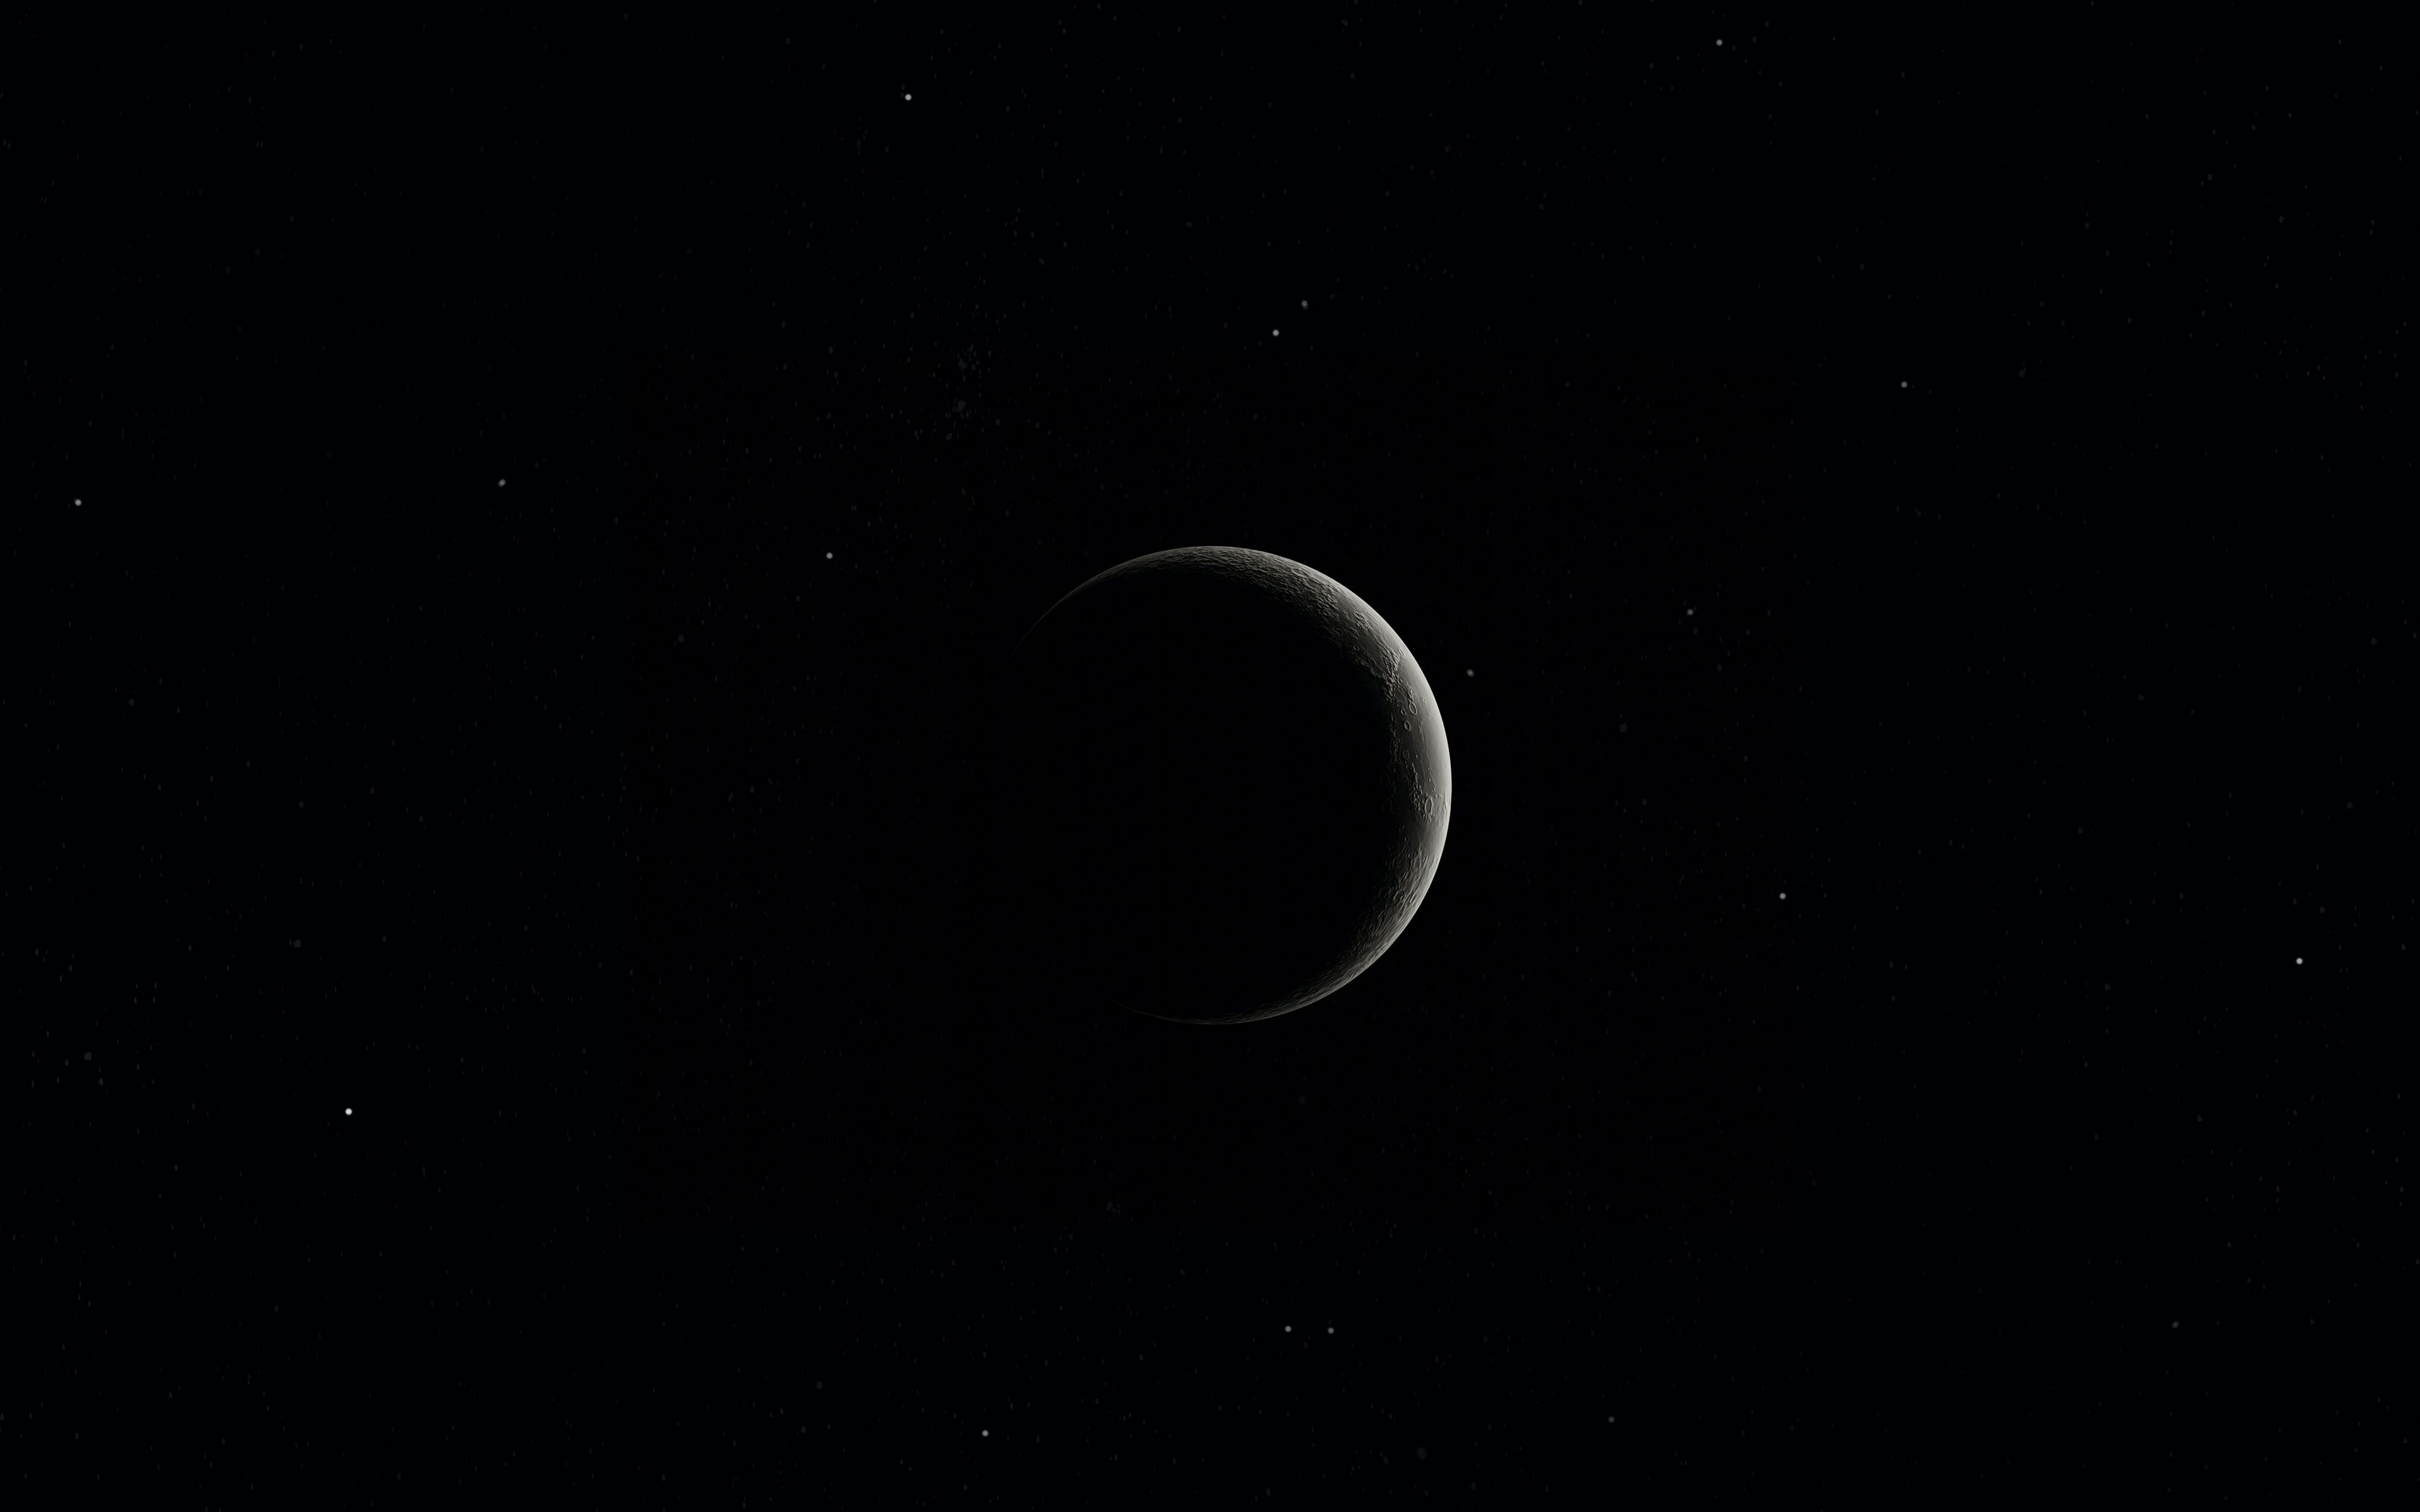 Hình nền 4k ultra hd với hình ảnh trăng tuyệt đẹp sẽ khiến bạn đắm chìm vào không gian thần tiên và cảm nhận sự yên bình của đêm. Hãy ngắm nhìn và tìm hiểu nguồn gốc của bức tranh này!